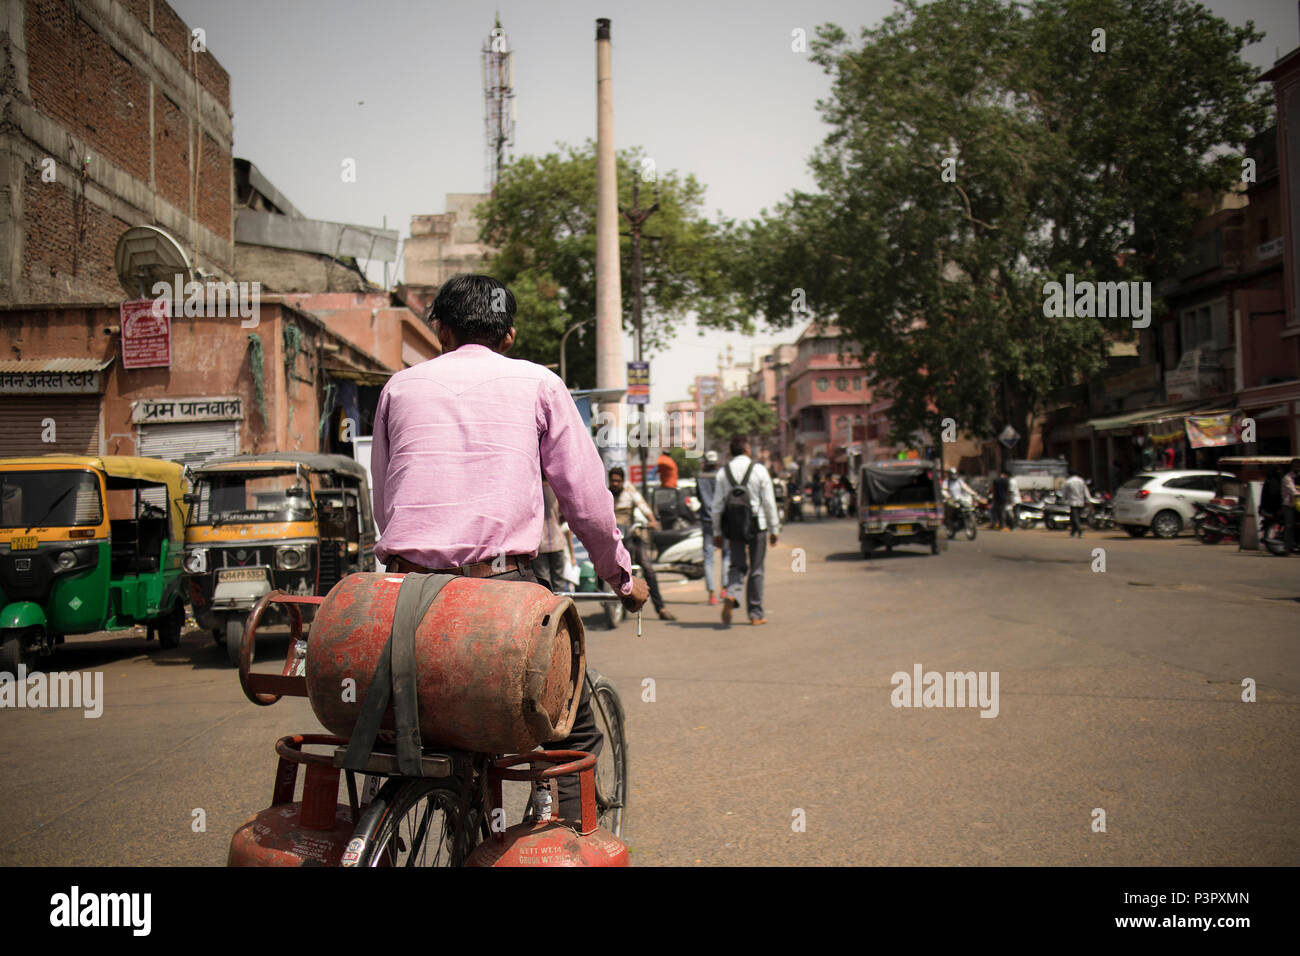 Men, street, gas, India Stock Photo